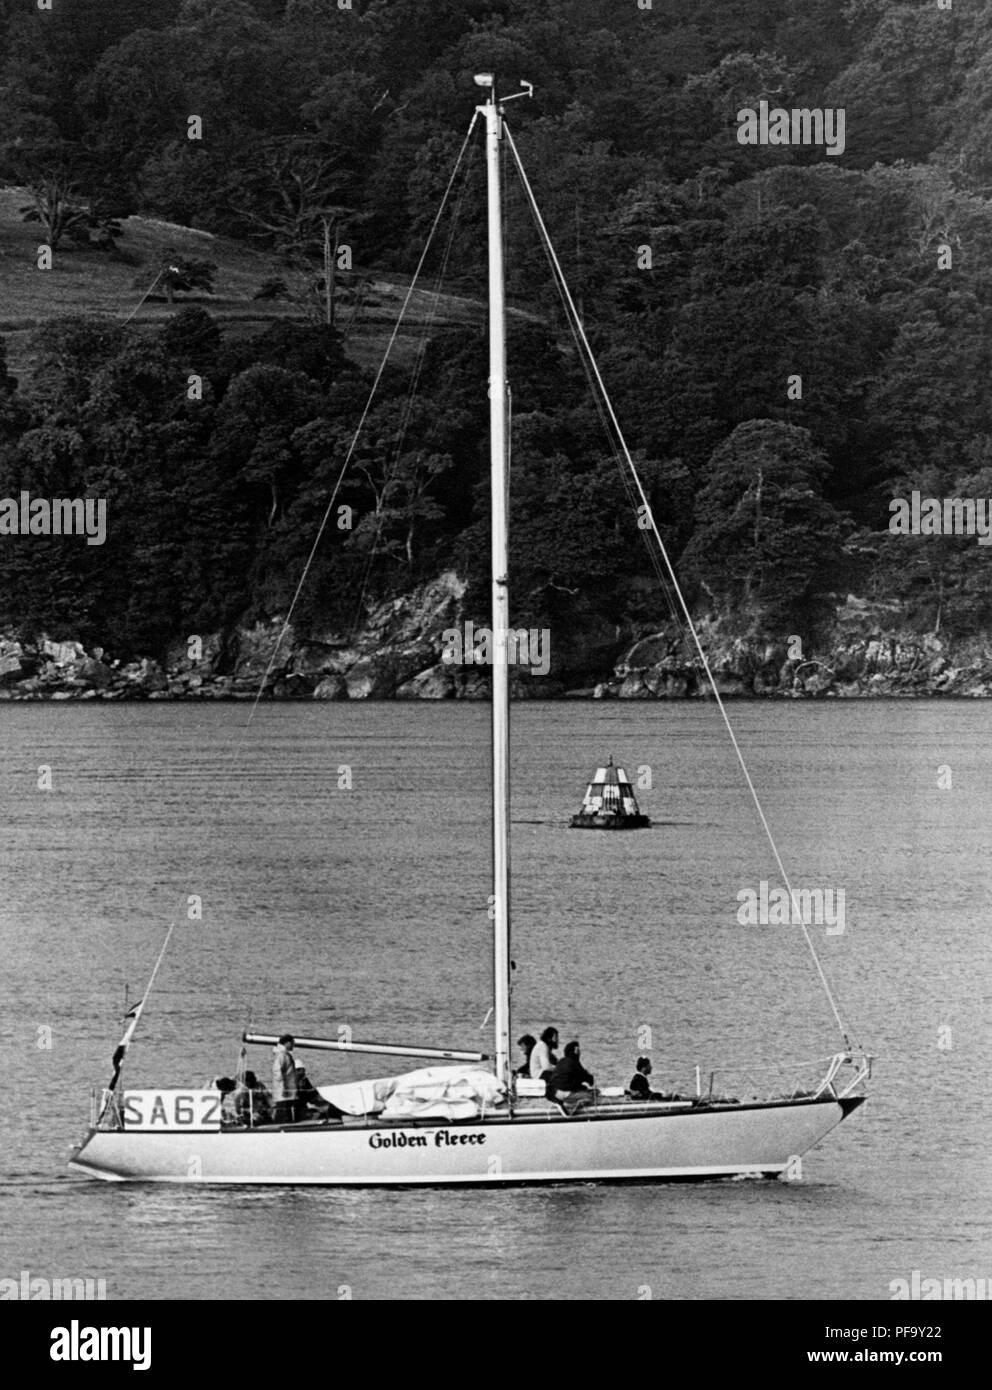 AJAXNETPHOTO. Juillet 14th, 1975. PLYMOUTH, ANGLETERRE - TOISON D'or, DERNIÈRE DE L'AFRIQUE DU SUD DE L'ADMIRAL'S CUP YACHTS DE L'ÉQUIPE POUR TERMINER LE 605 MILE Fastnet Race arrive à Plymouth Sound, tôt ce matin. PHOTO:JONATHAN EASTLAND/AJAX REF:FLEECE 1975 Banque D'Images